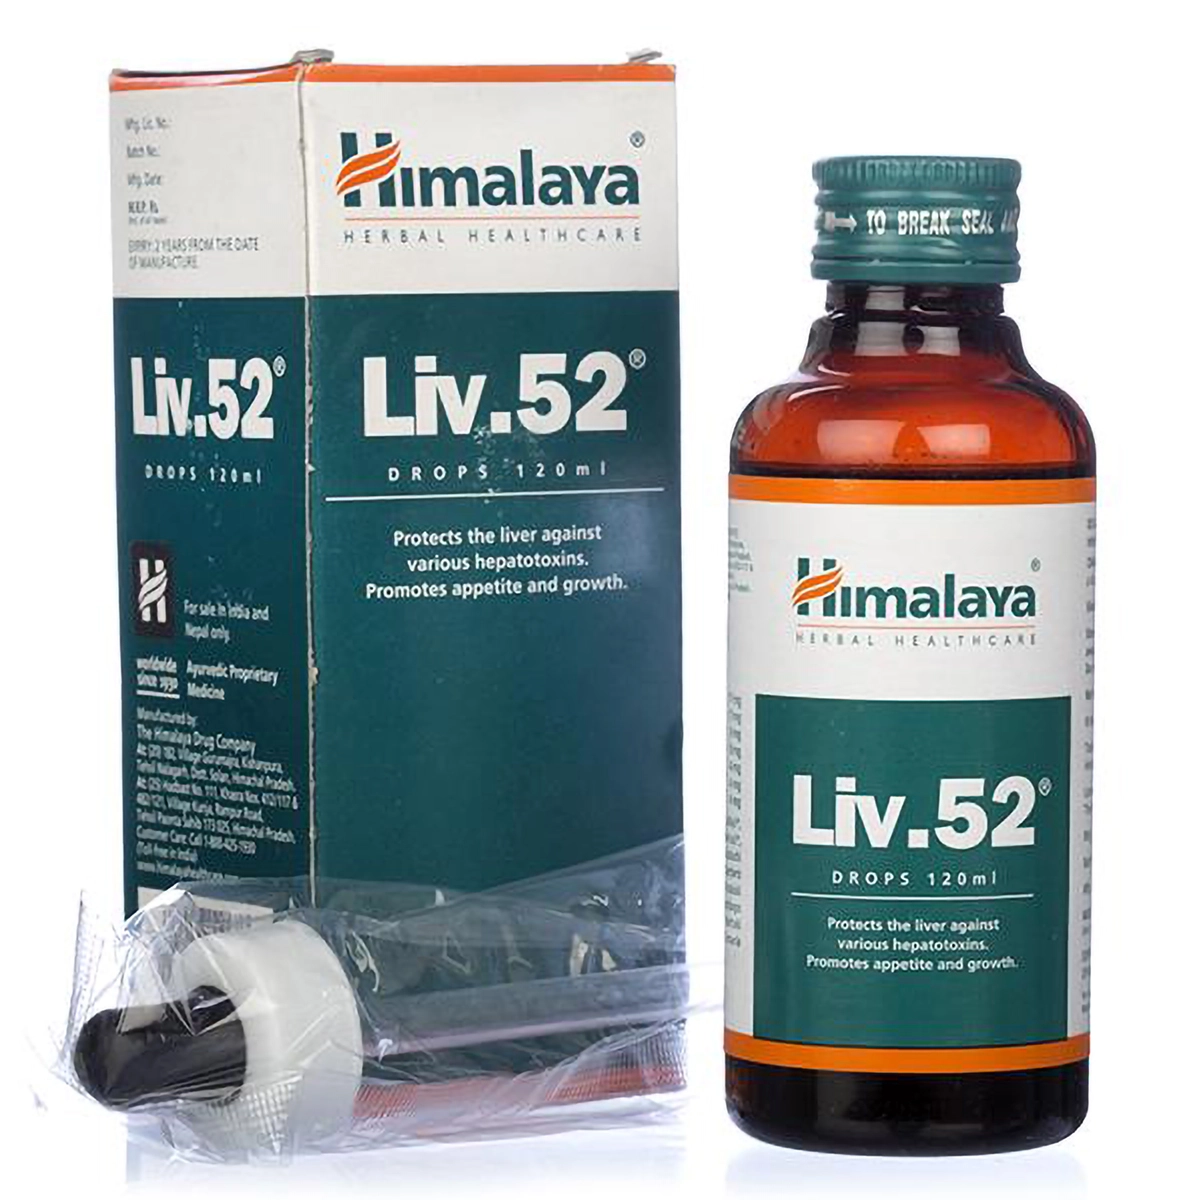 Liv.52 Himalaya 100 tablets - verano medical